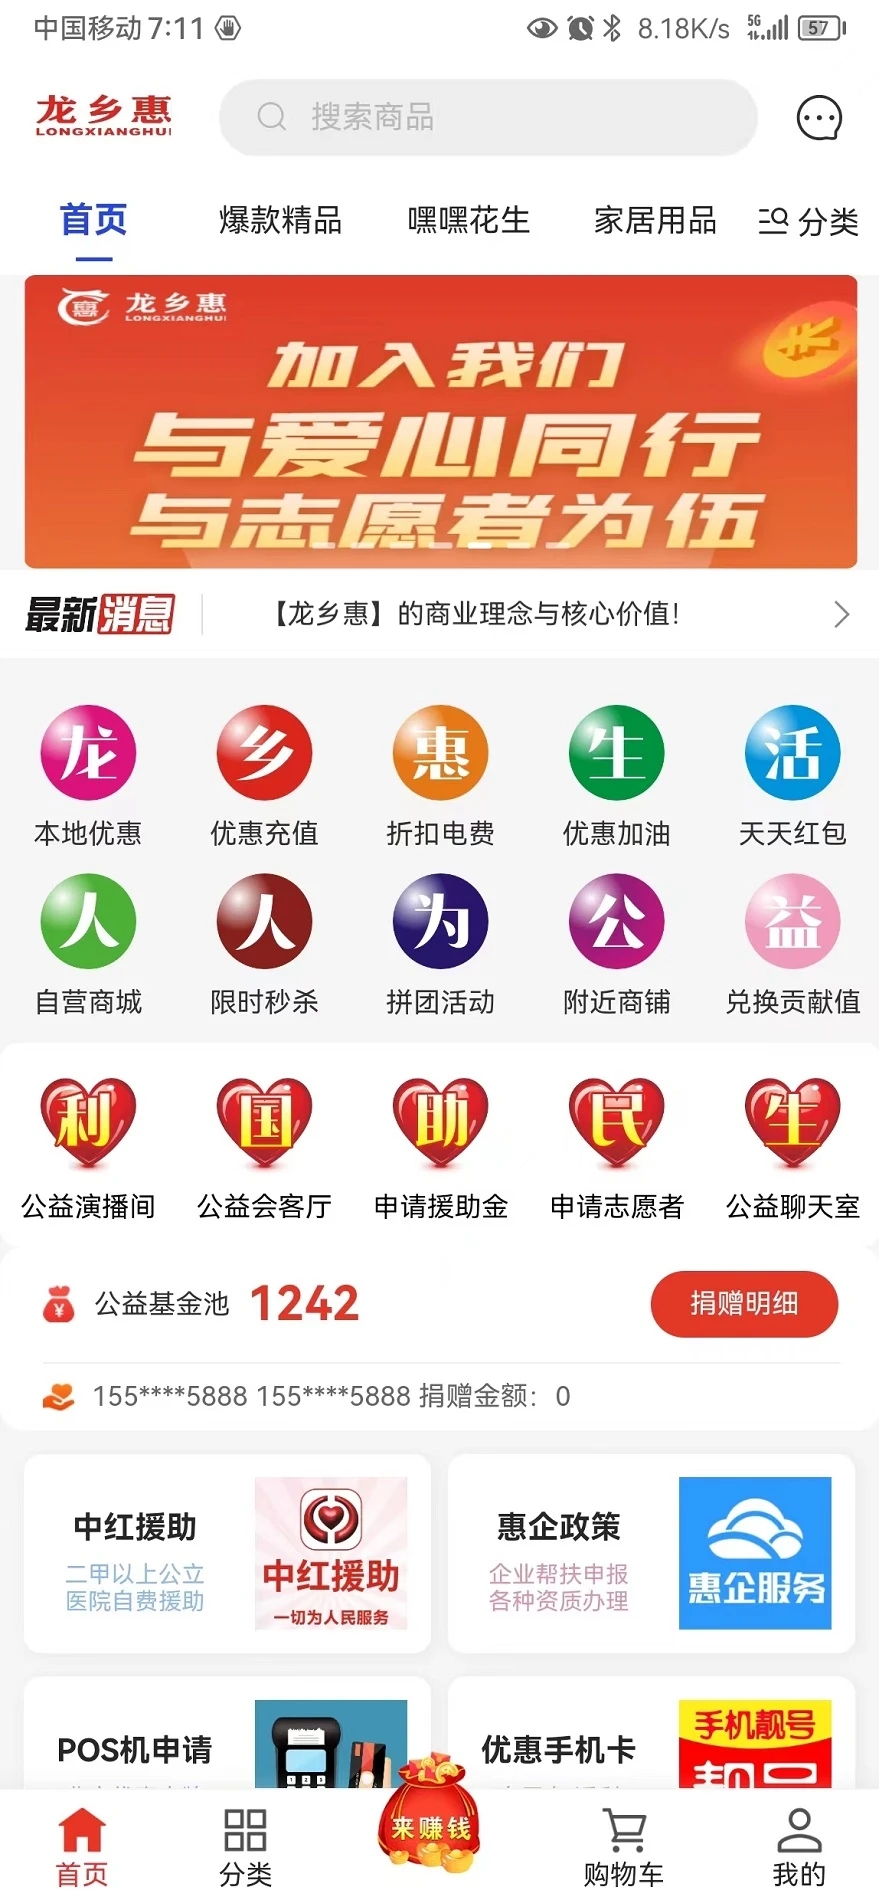 龙乡惠(生活服务)app